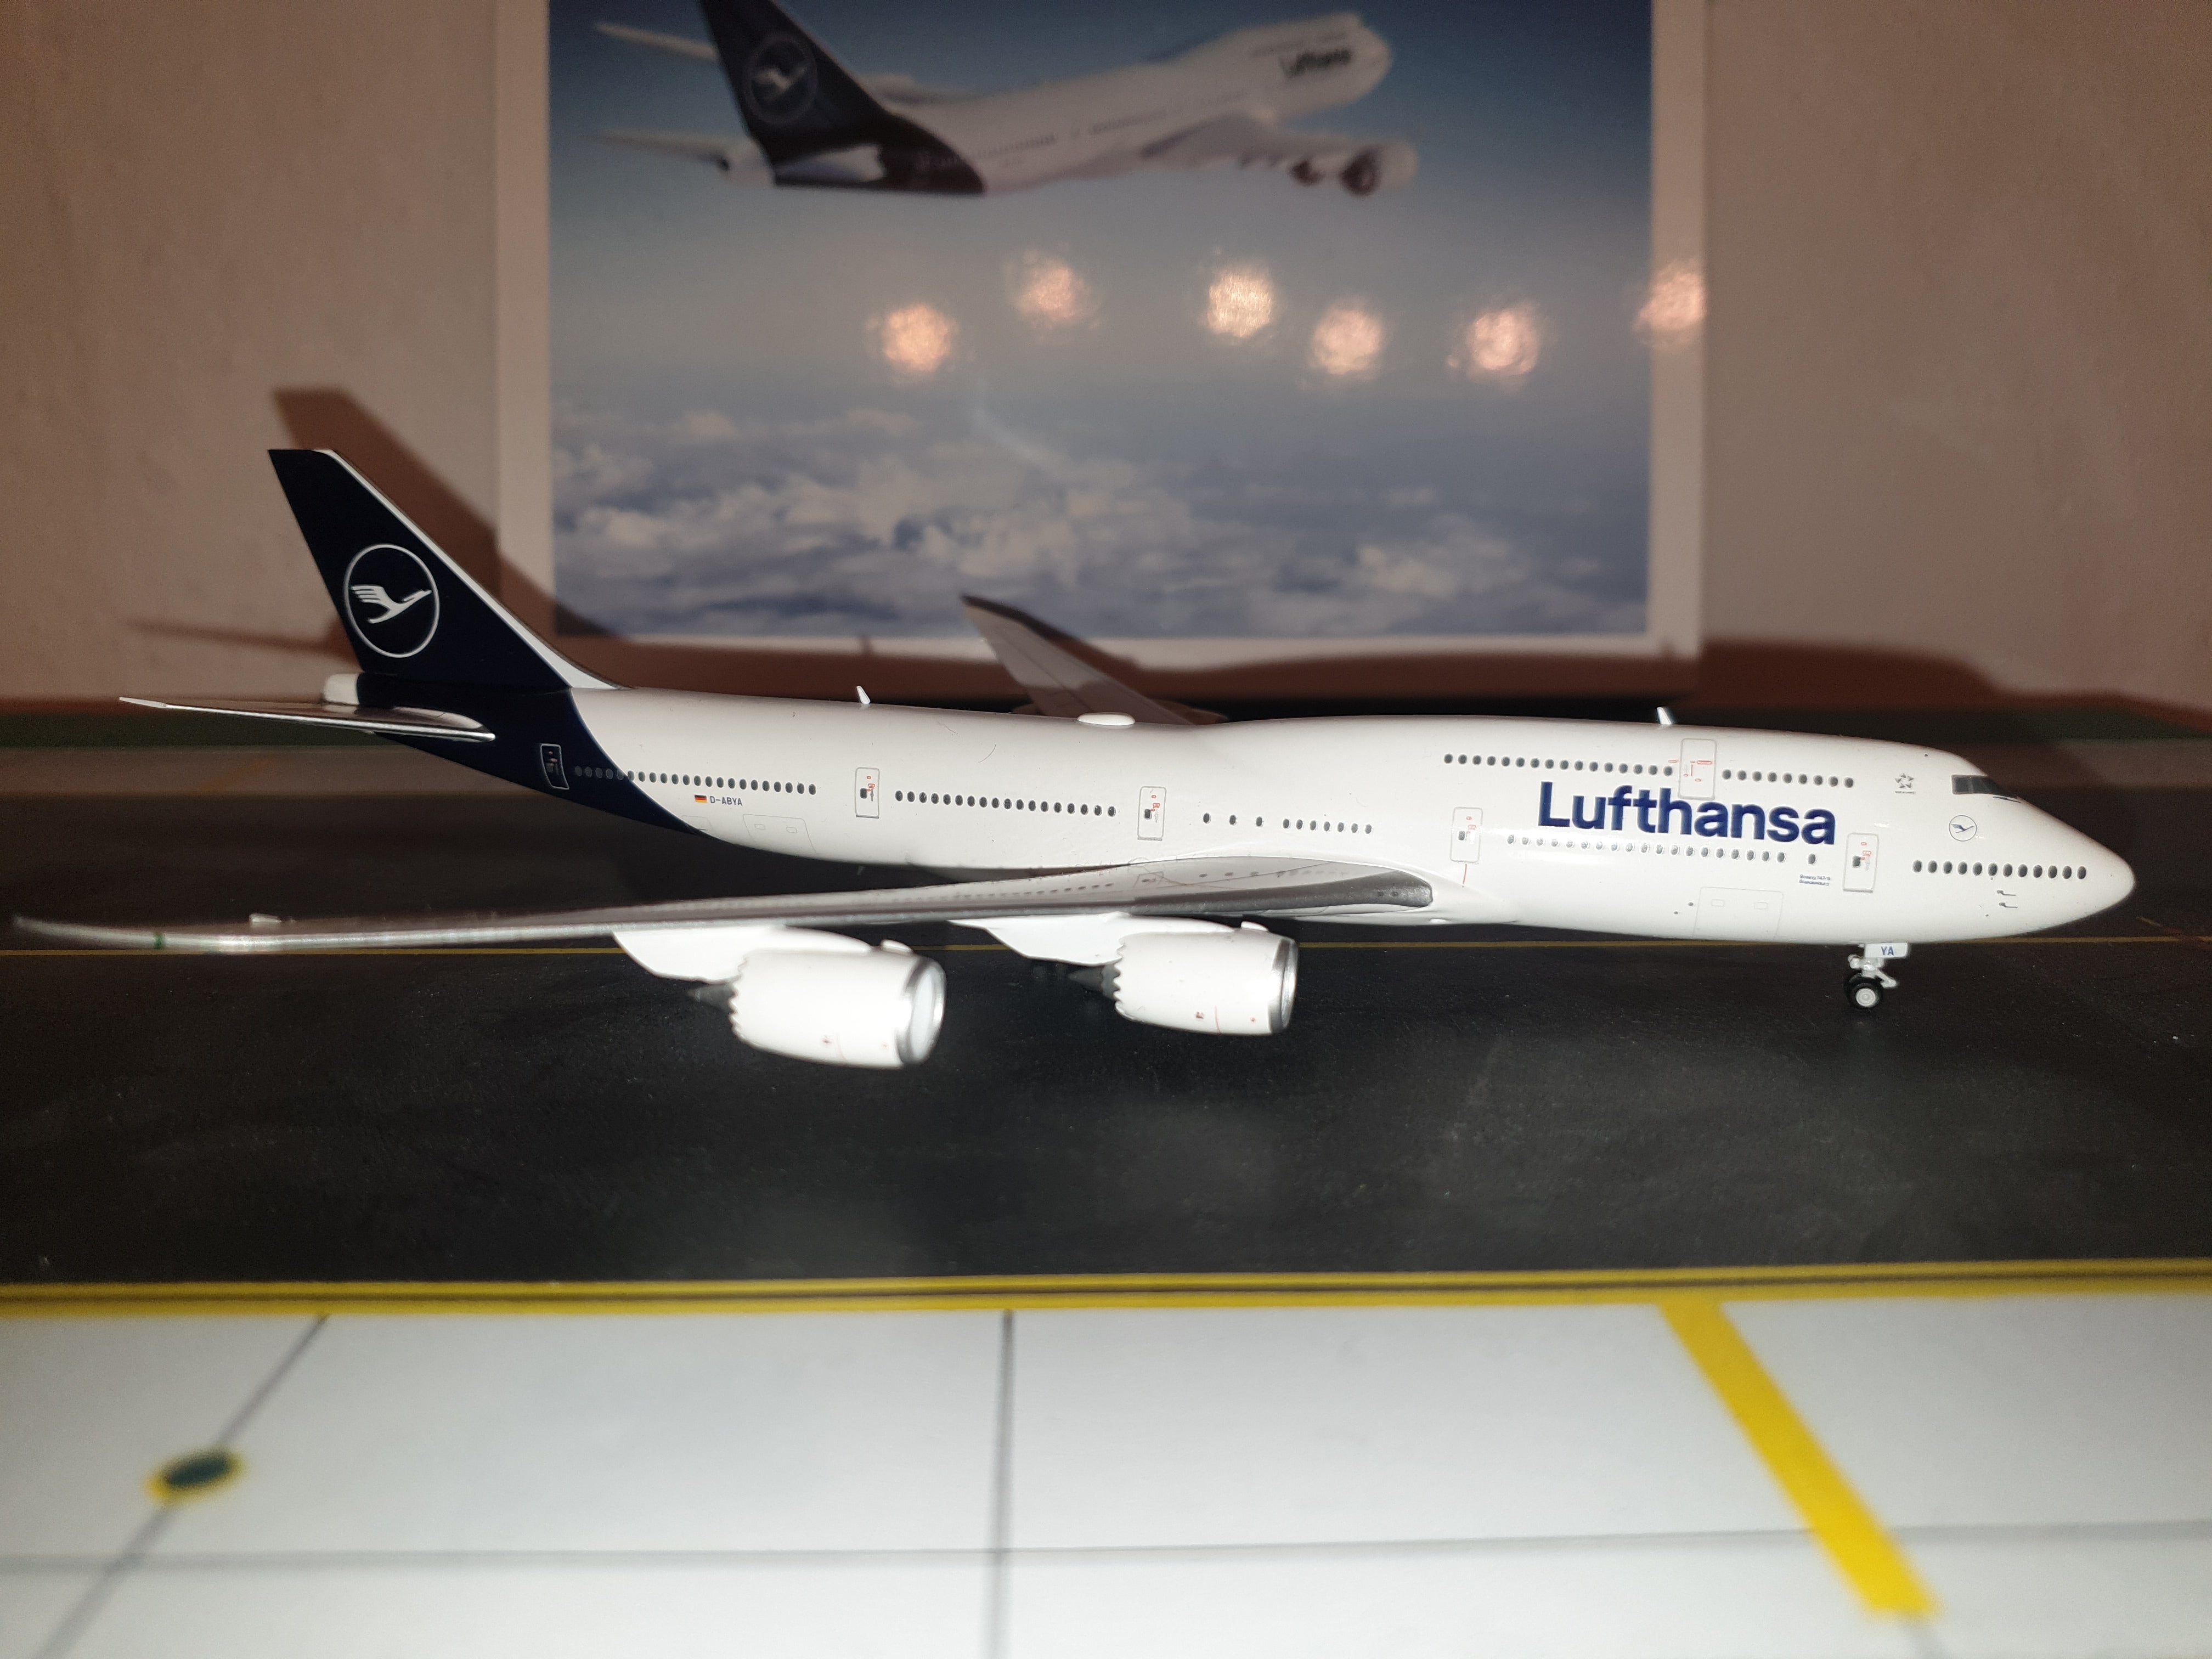 Herpa 530033 Lufthansa Boeing 747-8 Intercontinental